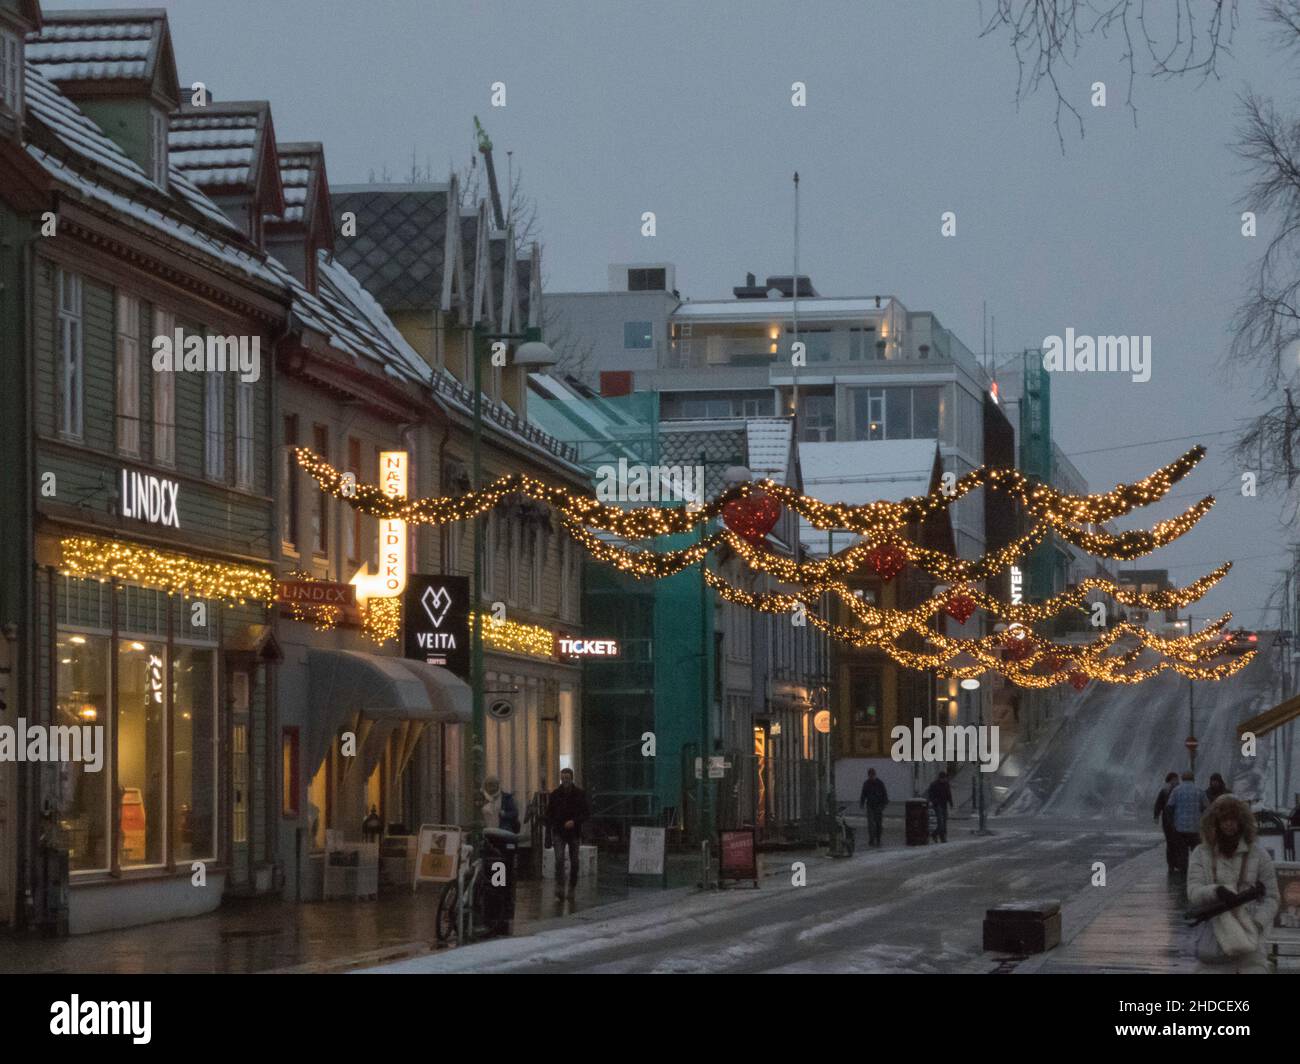 Weihnachtsstimmung in Tromsö / Xmas lights in Tromso Stock Photo